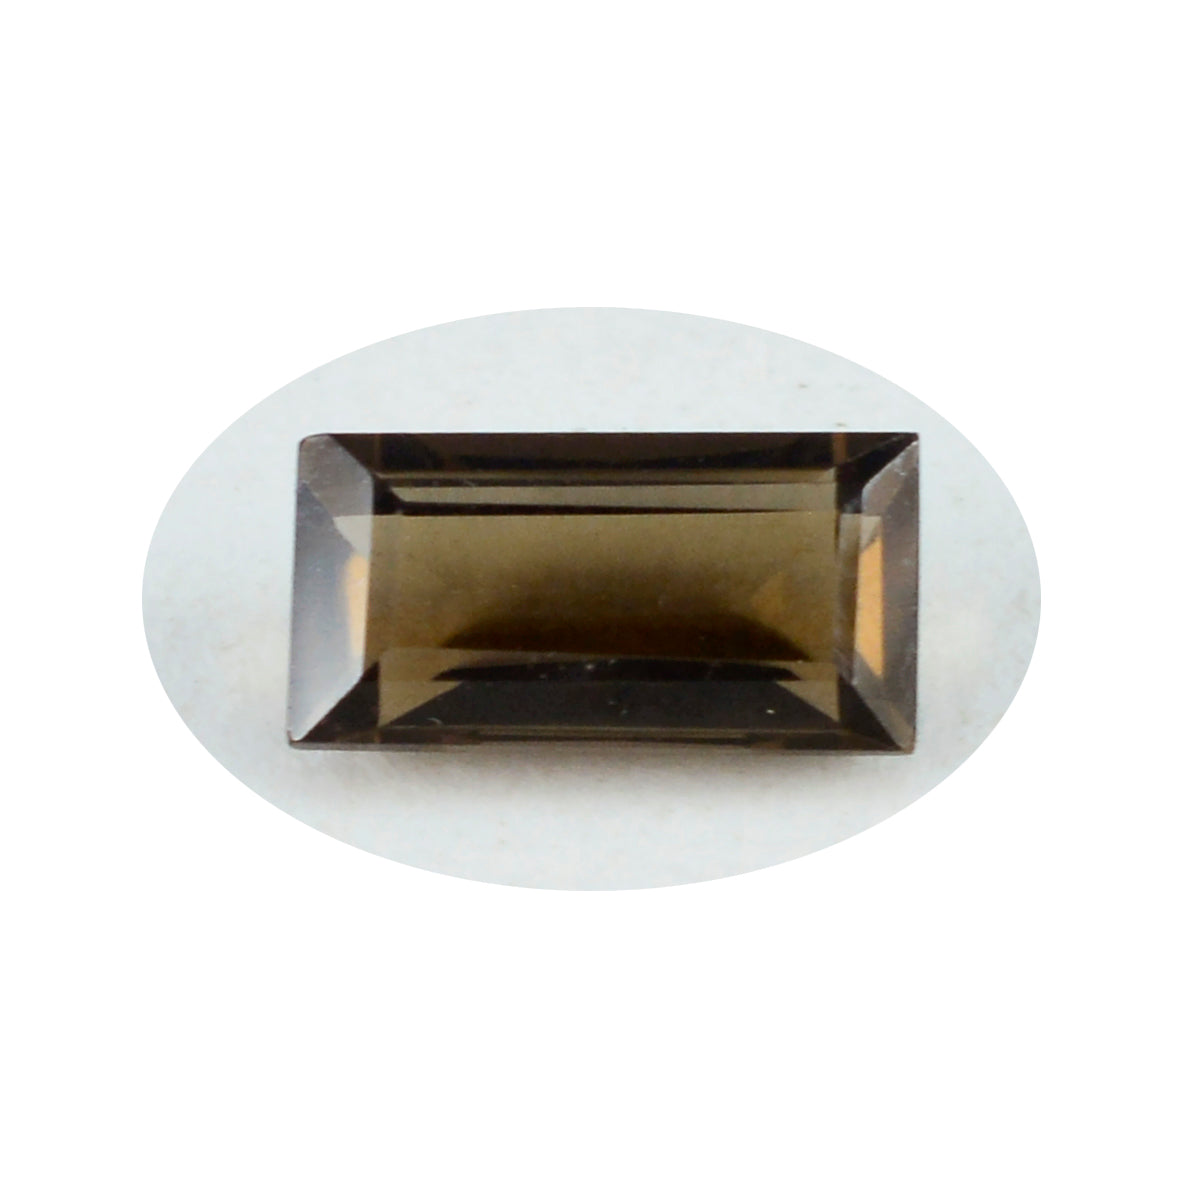 riyogems 1 шт. натуральный коричневый дымчатый кварц ограненный 6x12 мм форма багета + качество драгоценные камни